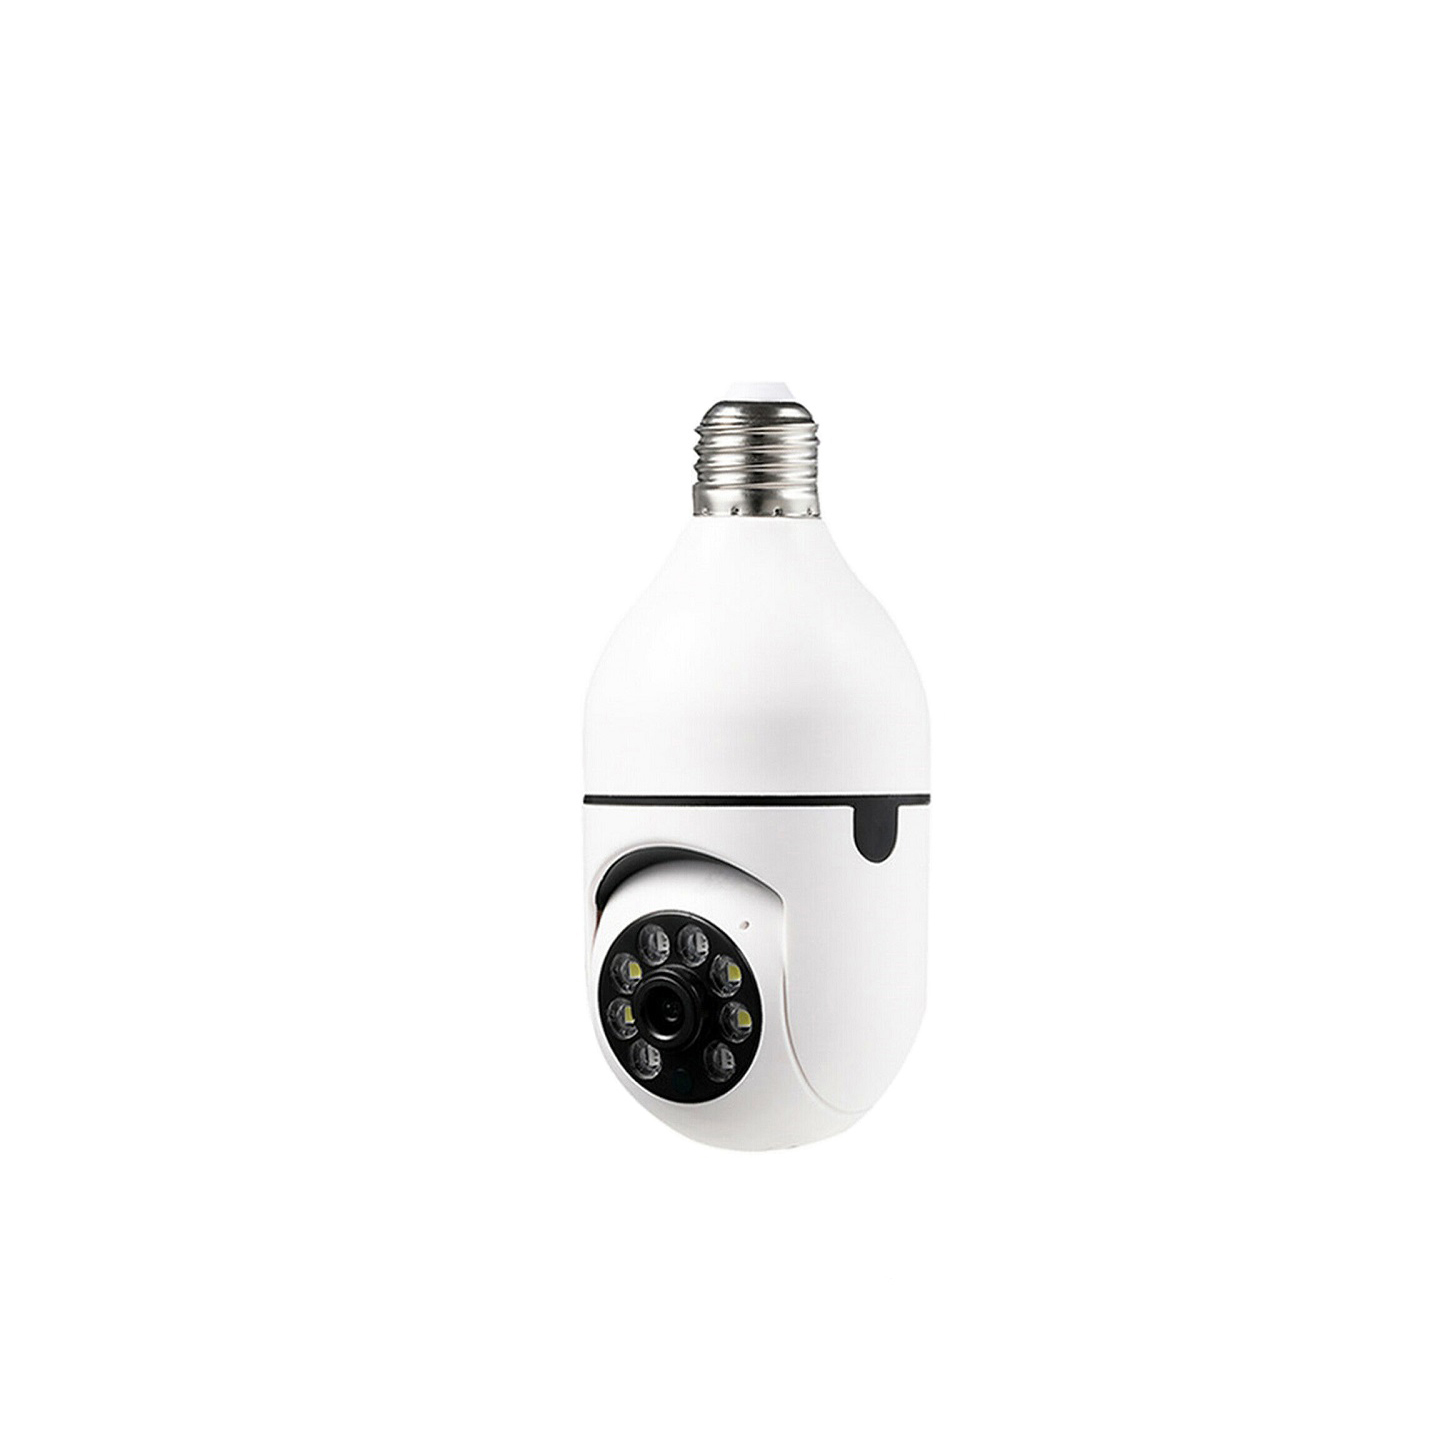 πανοραμική wifi ip κάμερα-λάμπα e27 2mp hd με αισθητήρα κίνησης & night vision jt8177 7575